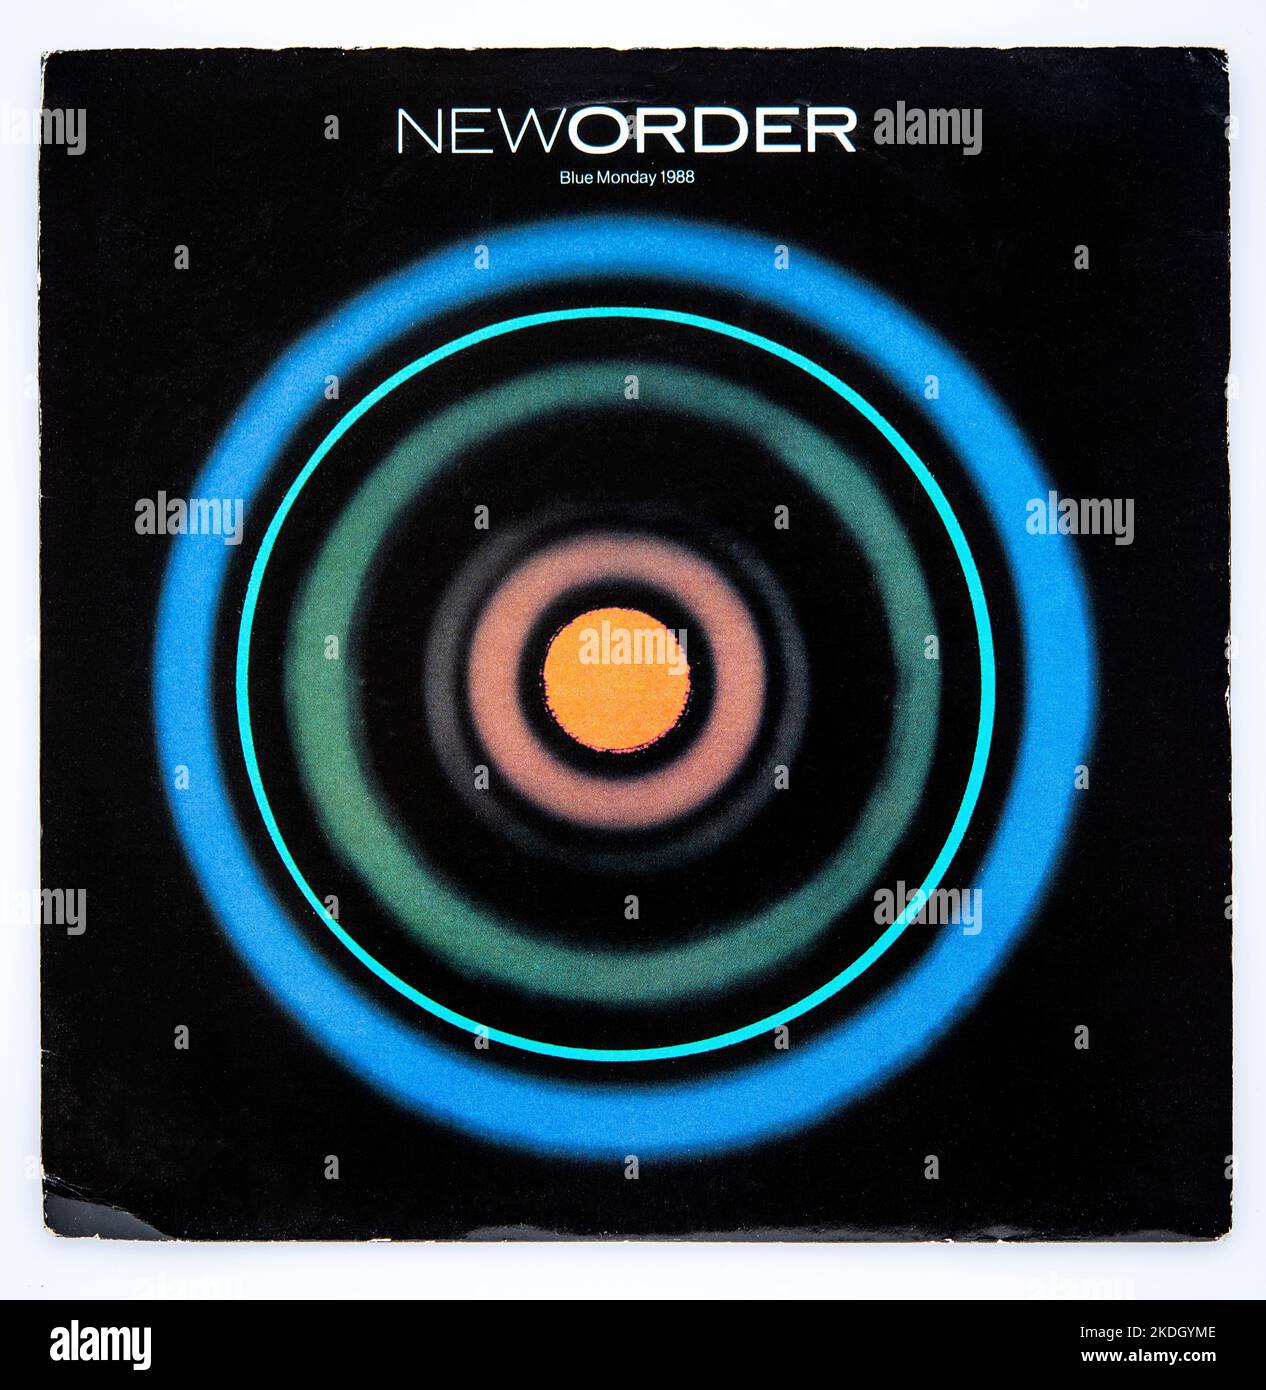 Bildercover der 7-Zoll-Vinyl-Version von New Ordens Single Blue Monday 88, einem Remix, der 1988 veröffentlicht wurde Stockfoto